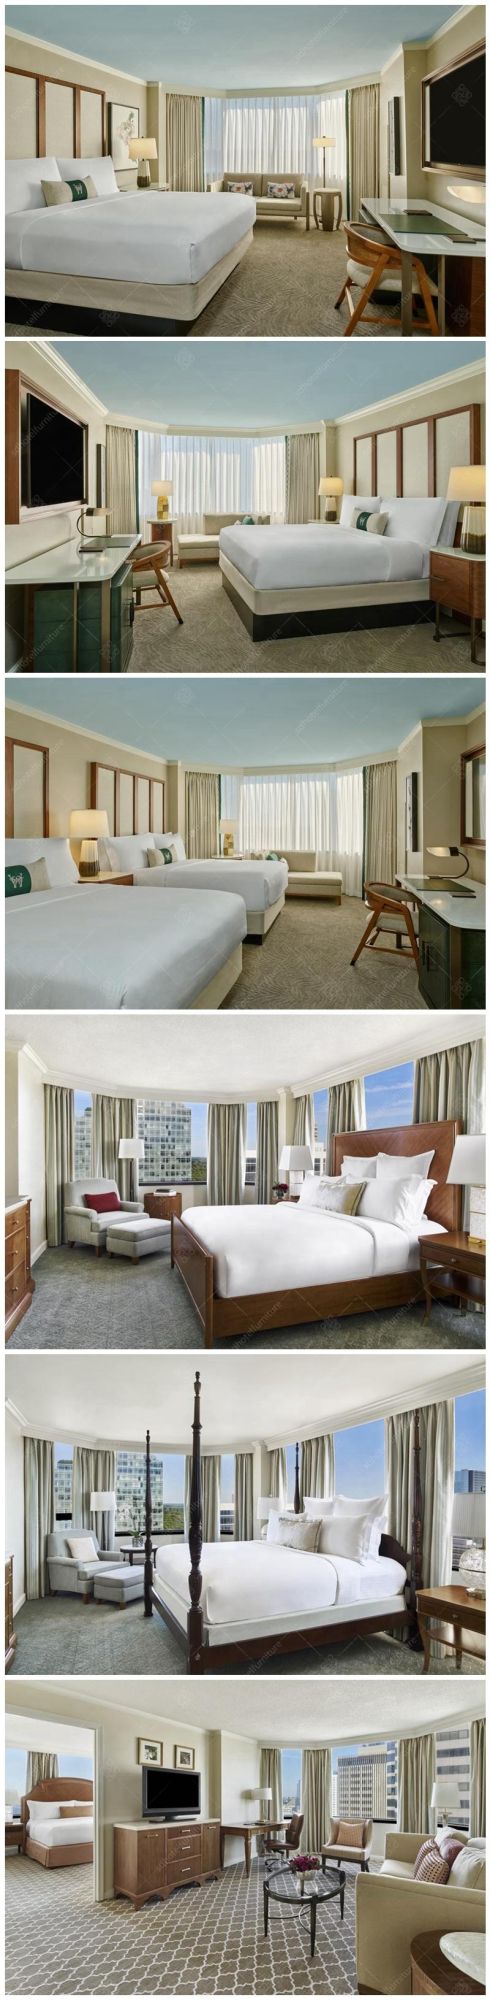 Modern Luxury 5 Stars Hotel Bedroom Furniture Sets Commercial Furniture Sets